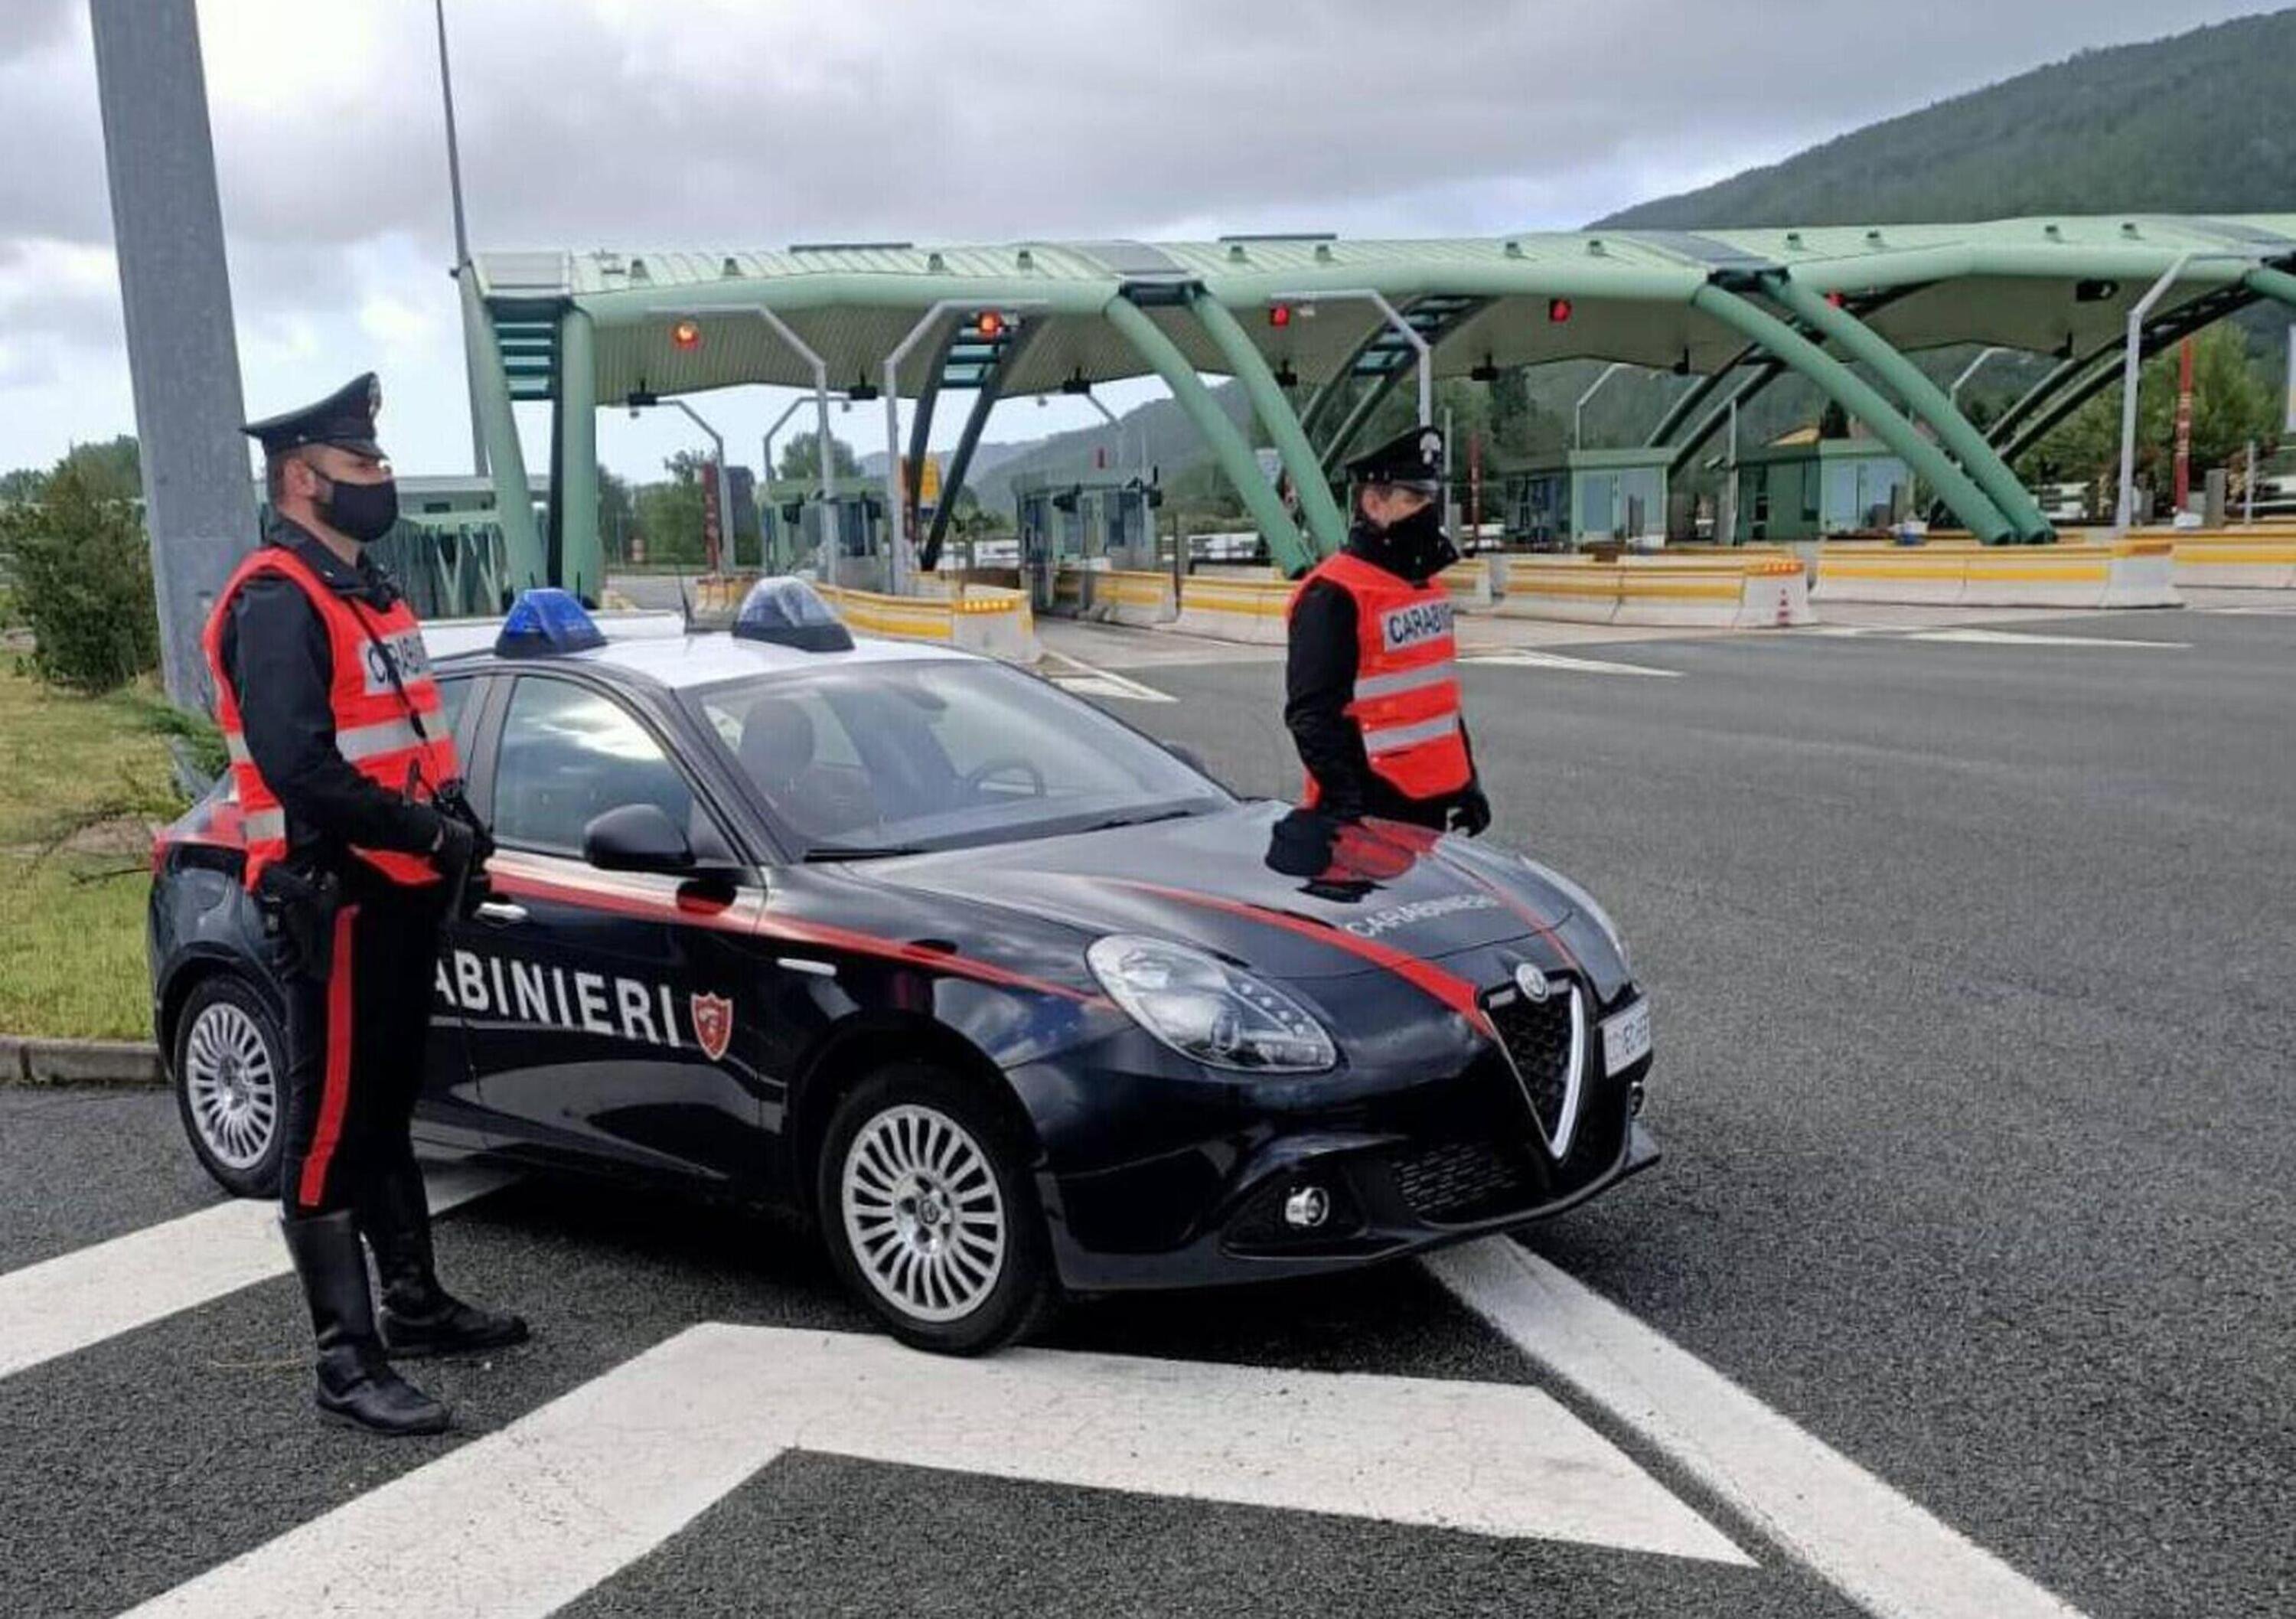 Fermato al volante di un&rsquo;Audi RS4, trasportava 1kg di cocaina: arrestato a Sarzana